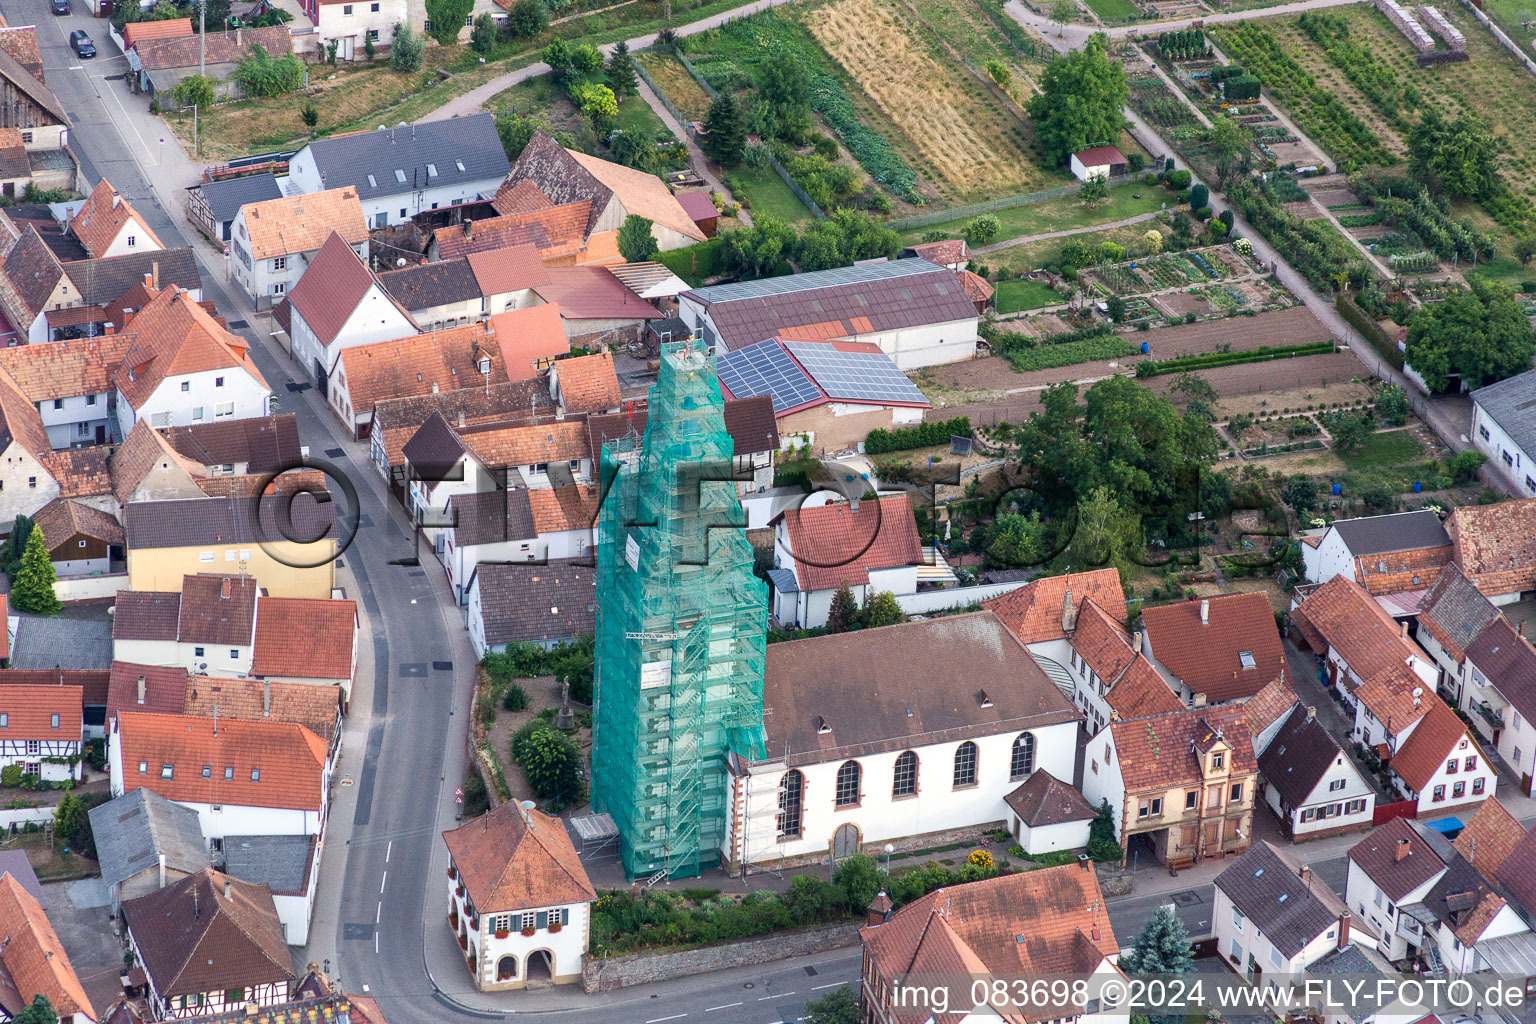 Vue aérienne de Tour d'église échafaudé et toit de tour de l'église catholique à Ottersheim bei Landau dans le département Rhénanie-Palatinat, Allemagne